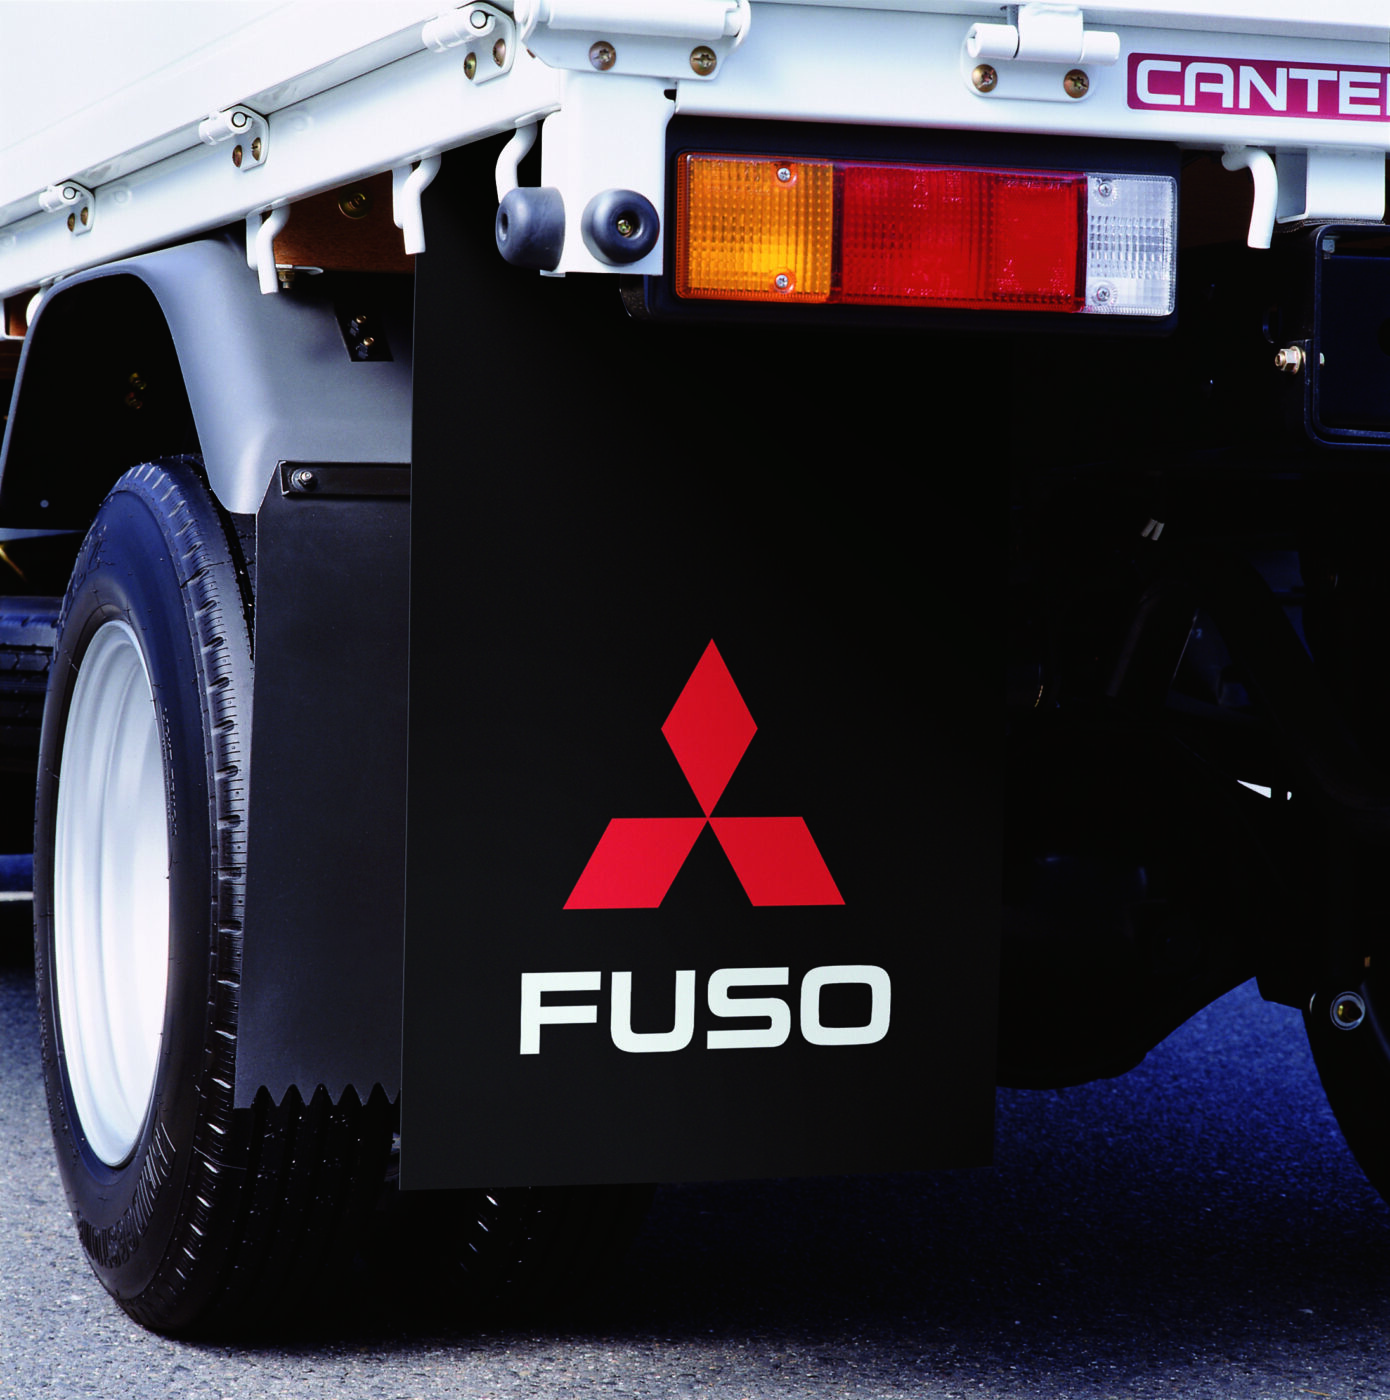 Les déflecteurs de saleté FUSO protègent le véhicule, les passagers, les autres véhicules et les piétons de la boue et des salissures soulevées par les pneus.